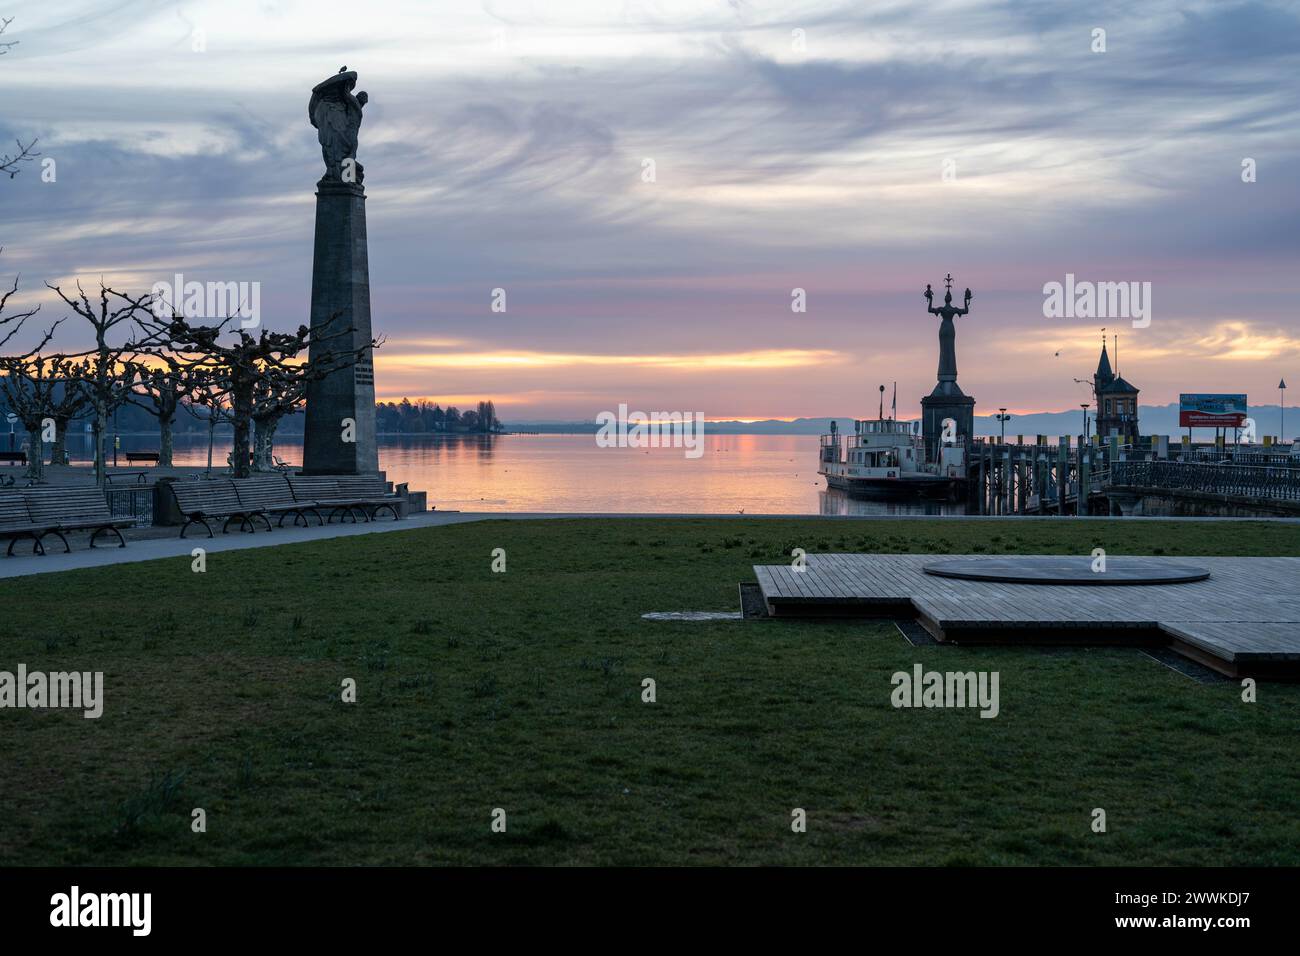 Beschreibung: Blick bei Morgendämmerung über die Hafeneinfahrt auf den See mit Imperia Statue und Grafen Zeppelin Statue im Vordergrund. Konstanz, Bod Stock Photo